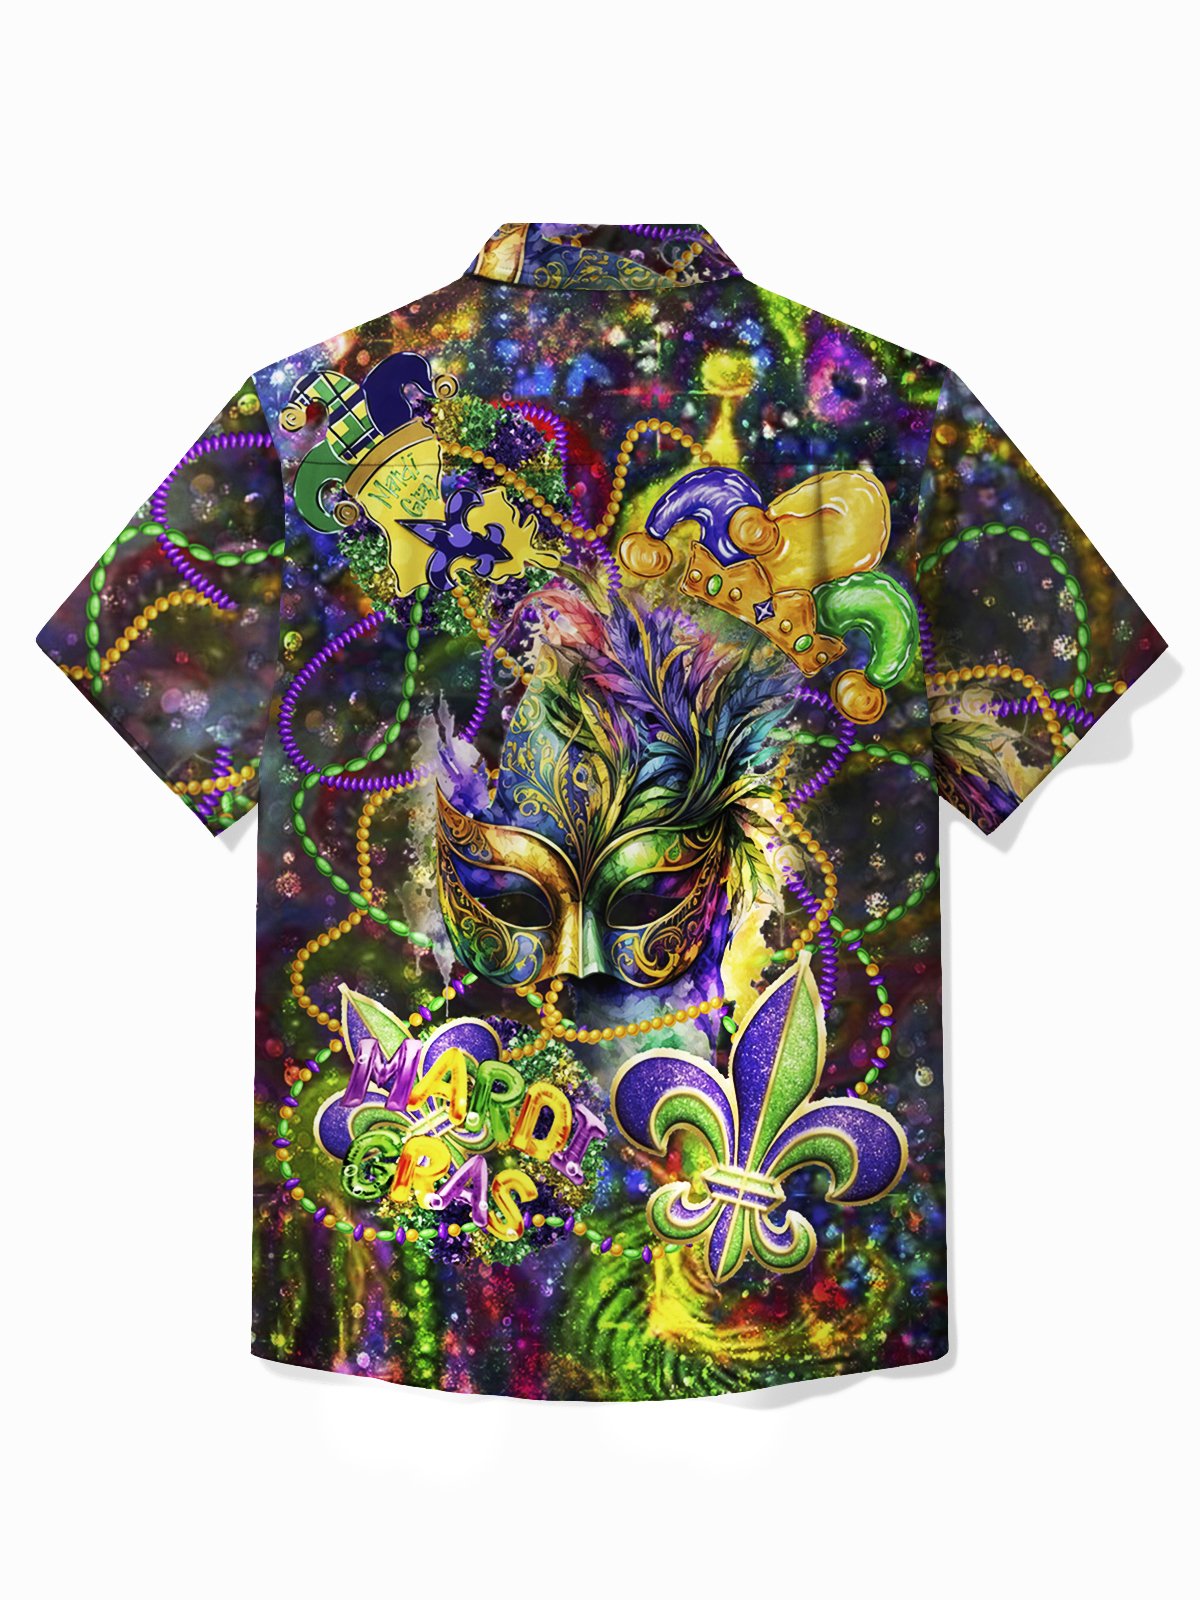 Royaura® Mardi Gras Holiday Hawaiian Shirt Mask & Tops